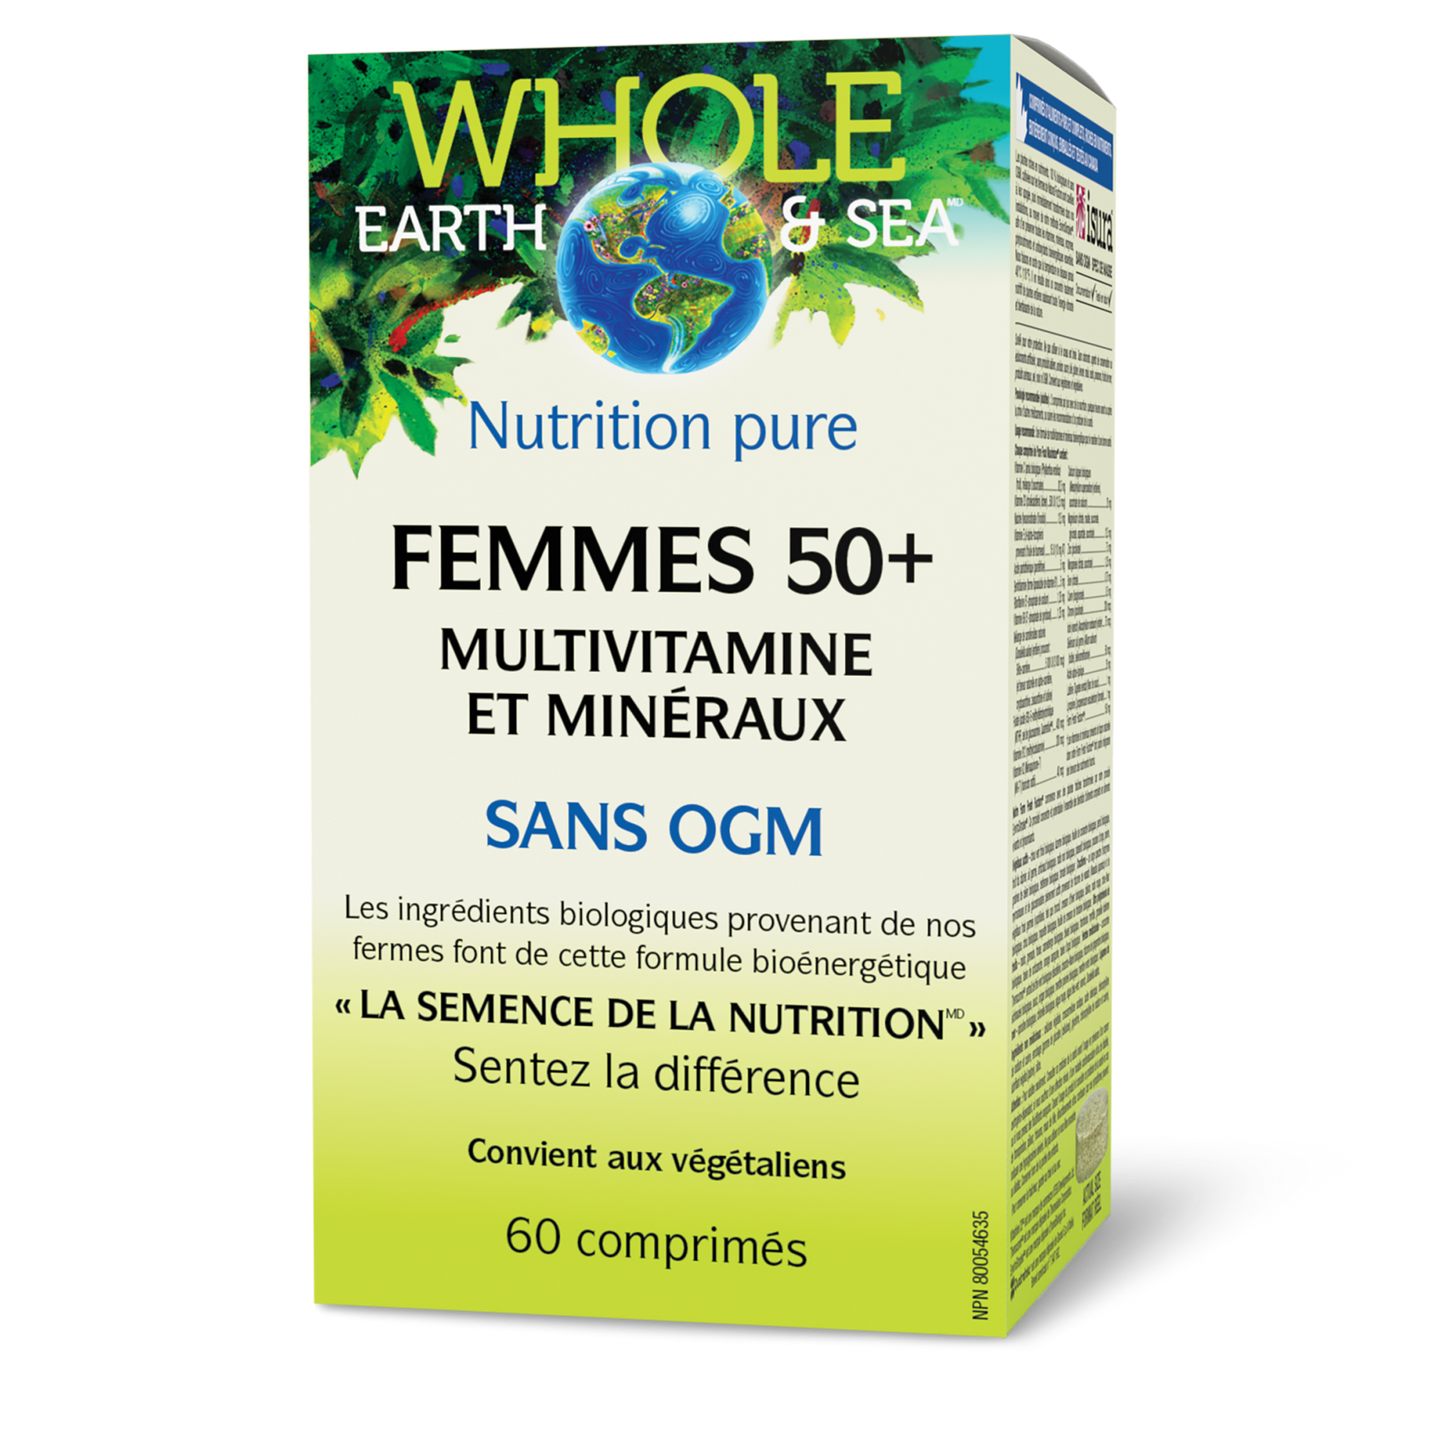 Multivitamine et minéraux Femmes 50+, Whole Earth & Sea, Whole Earth & Sea®|v|image|35501